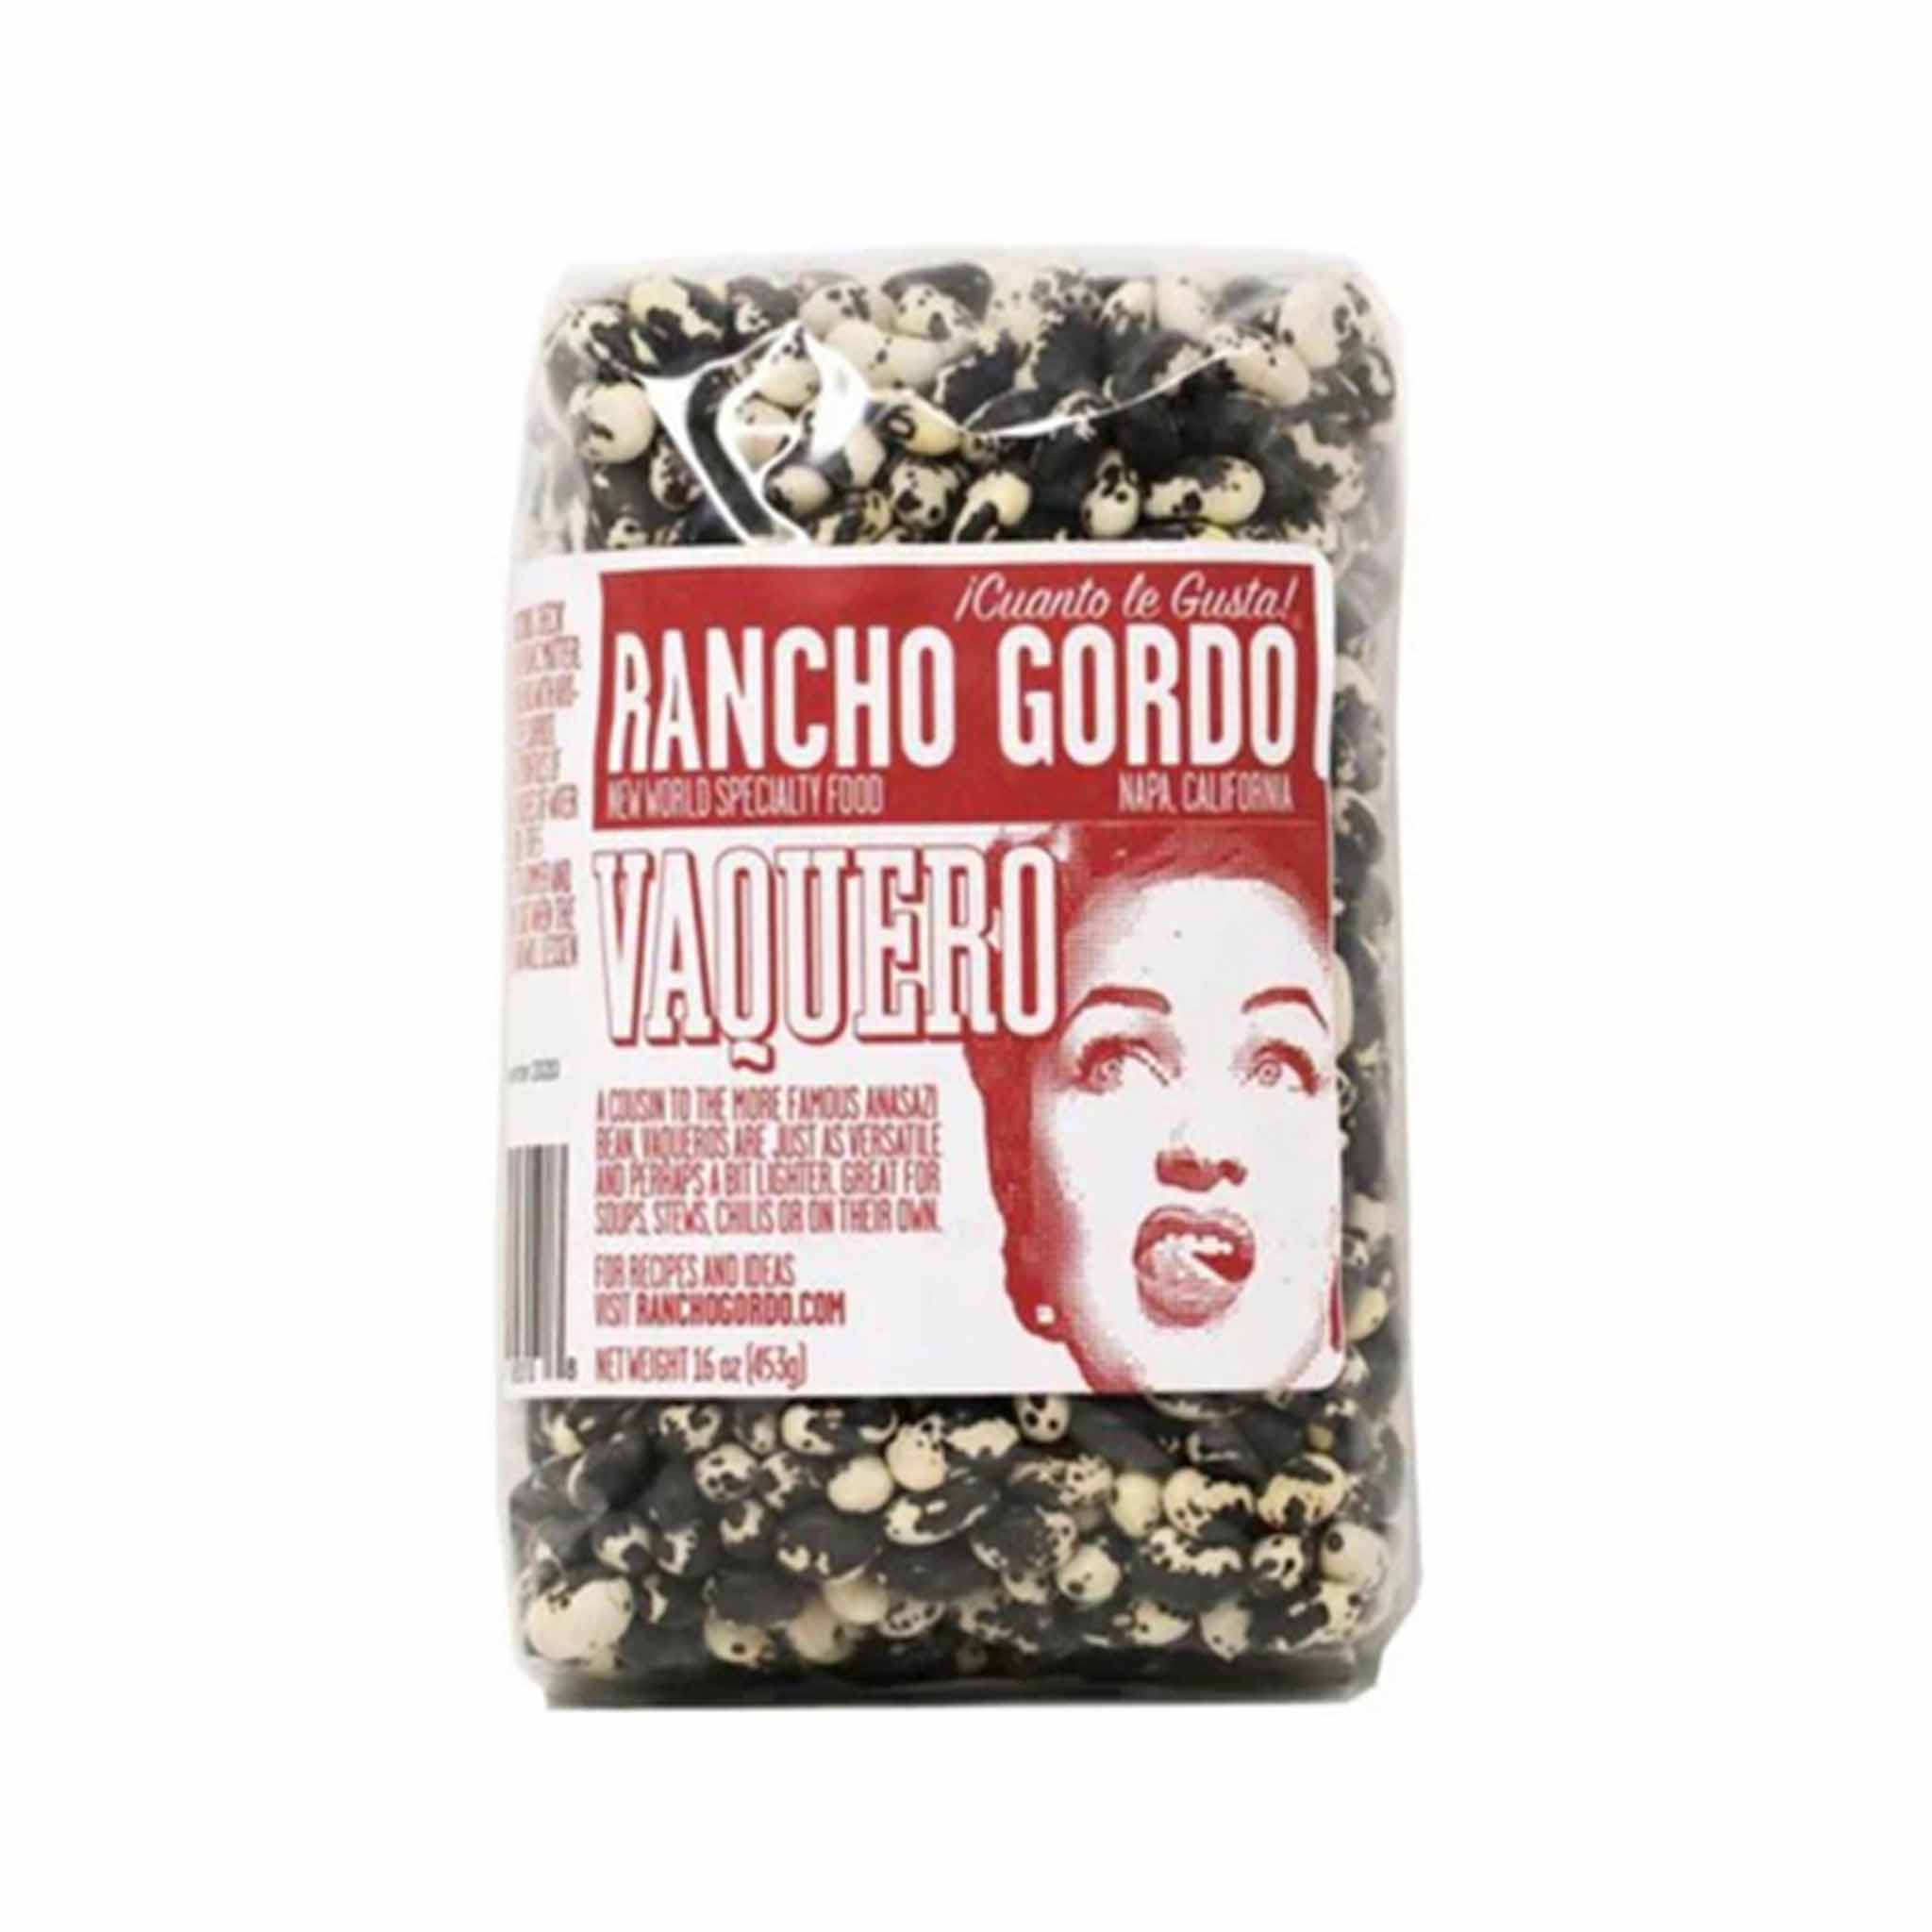 Rancho Gordo Vaquero Beans